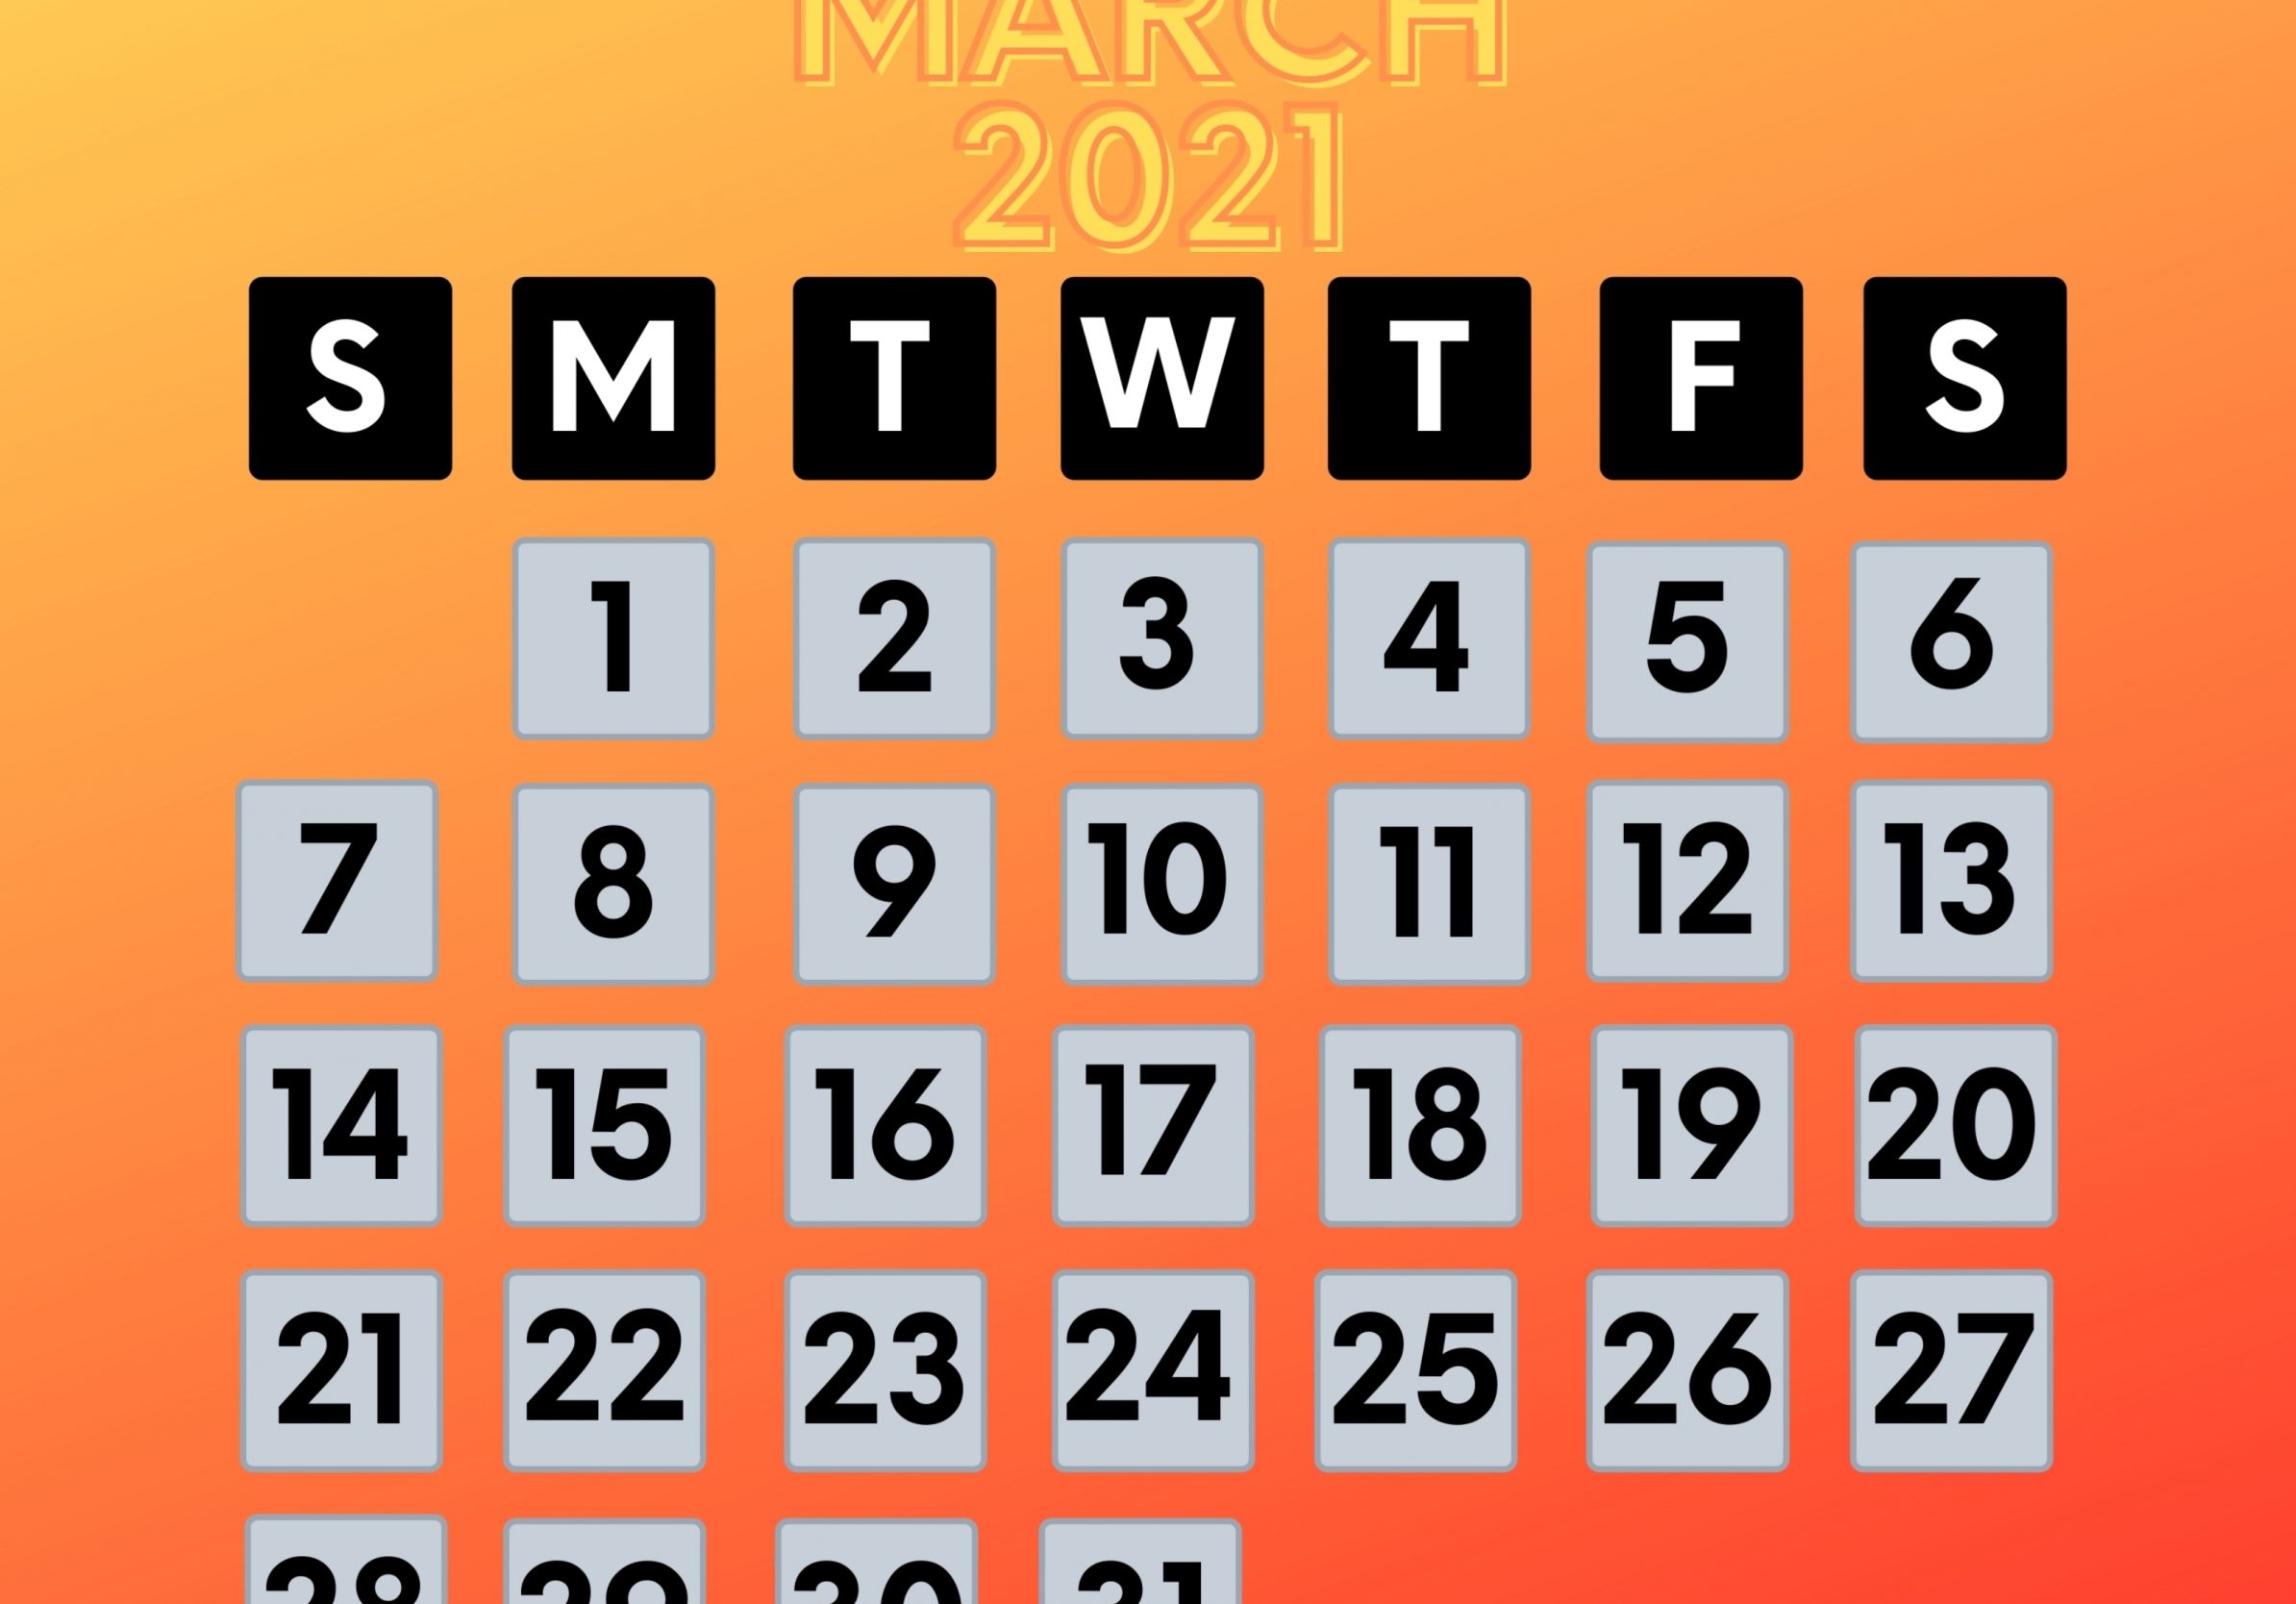 2388x1668 iPad Pro wallpapers March 2021 Calendar iPad Wallpaper 2388x1668 pixels resolution